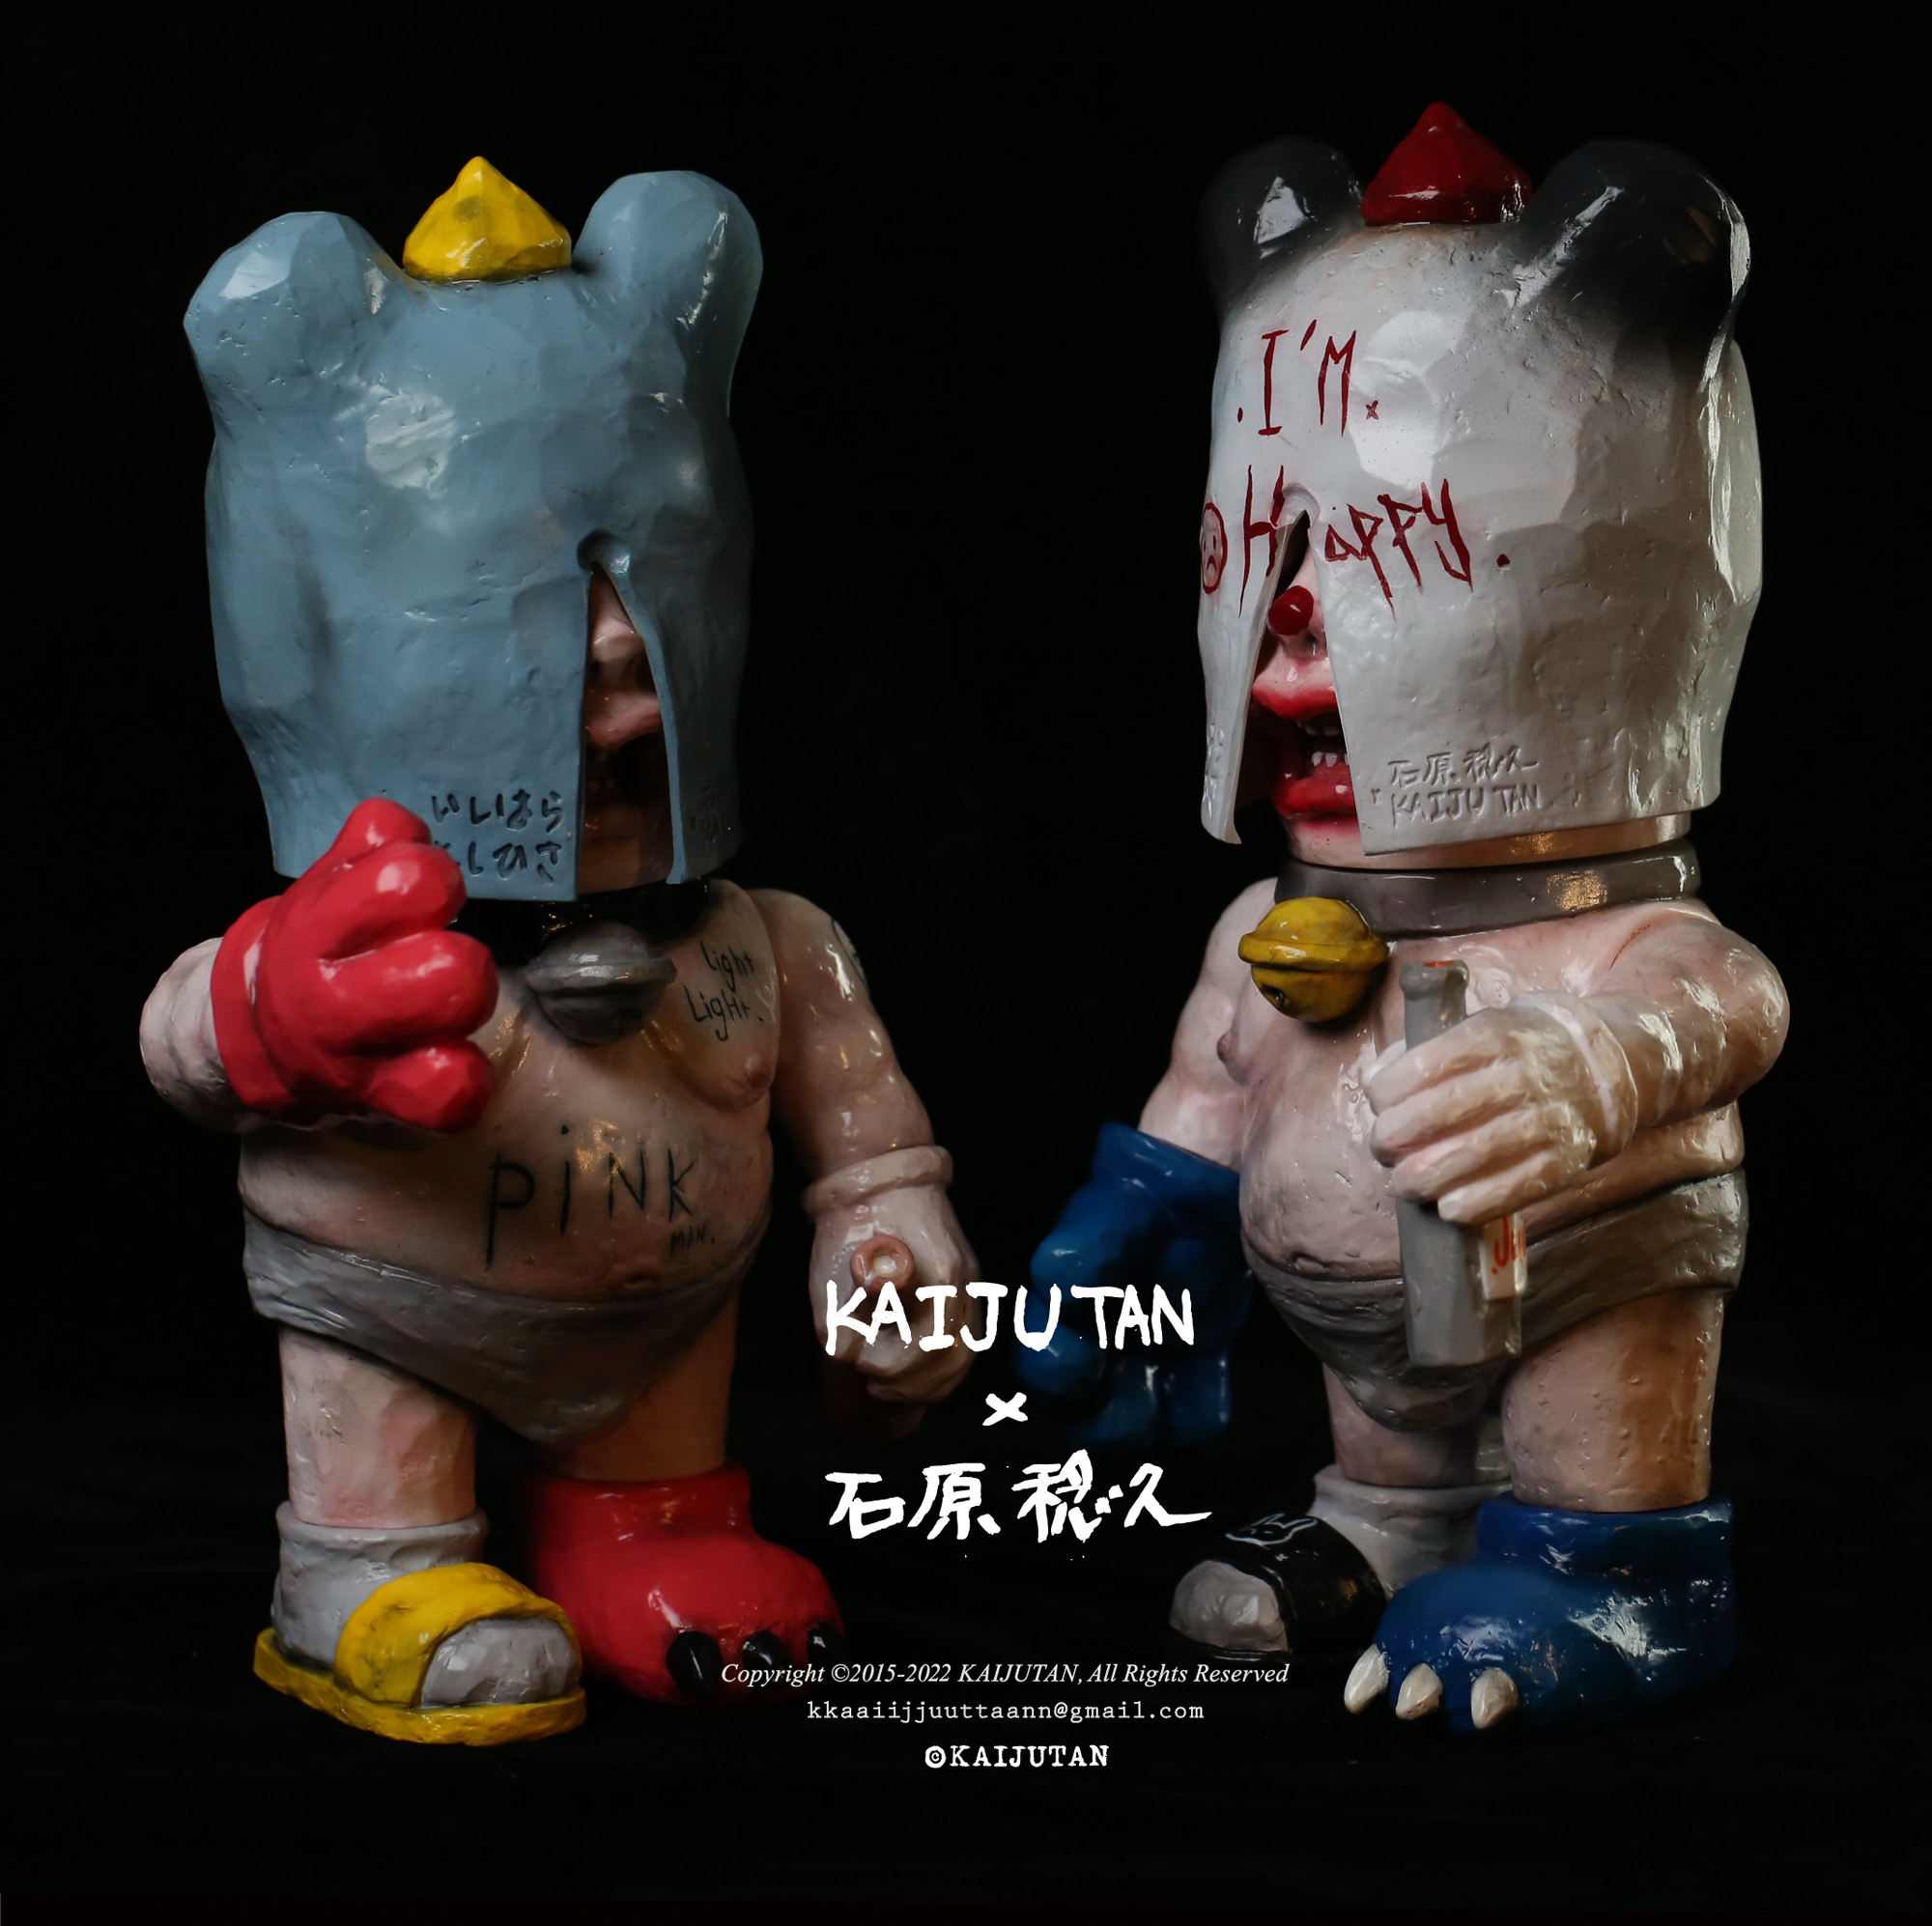 艺术家 kaijutan 携手石原稔久发布限量联名系列